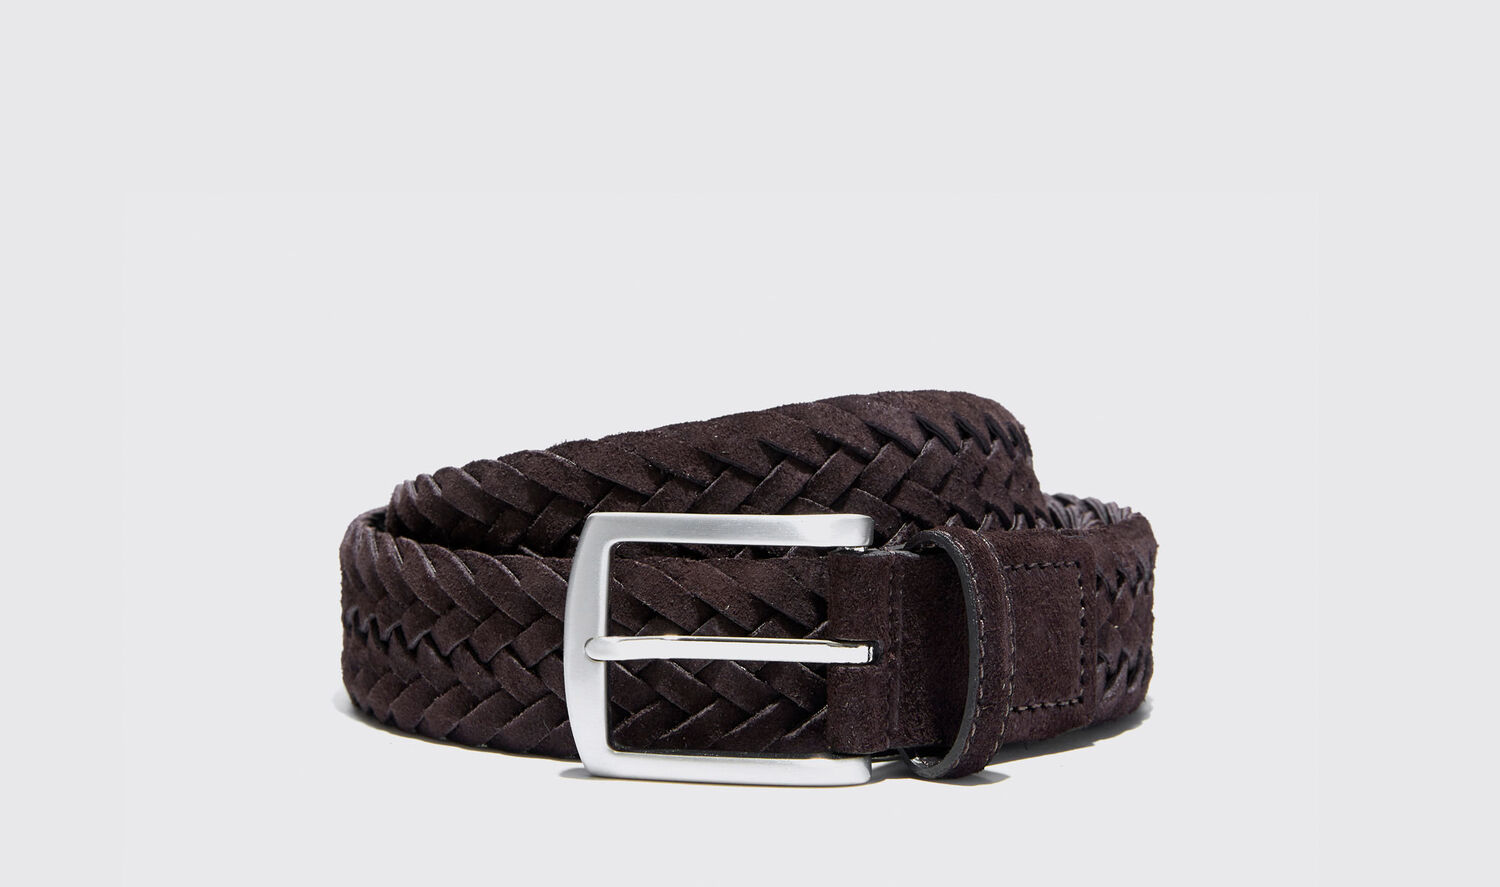 Scarosso Belts Cintura Marrone Intrecciata Scamosciata Suede Leather In Brown Suede